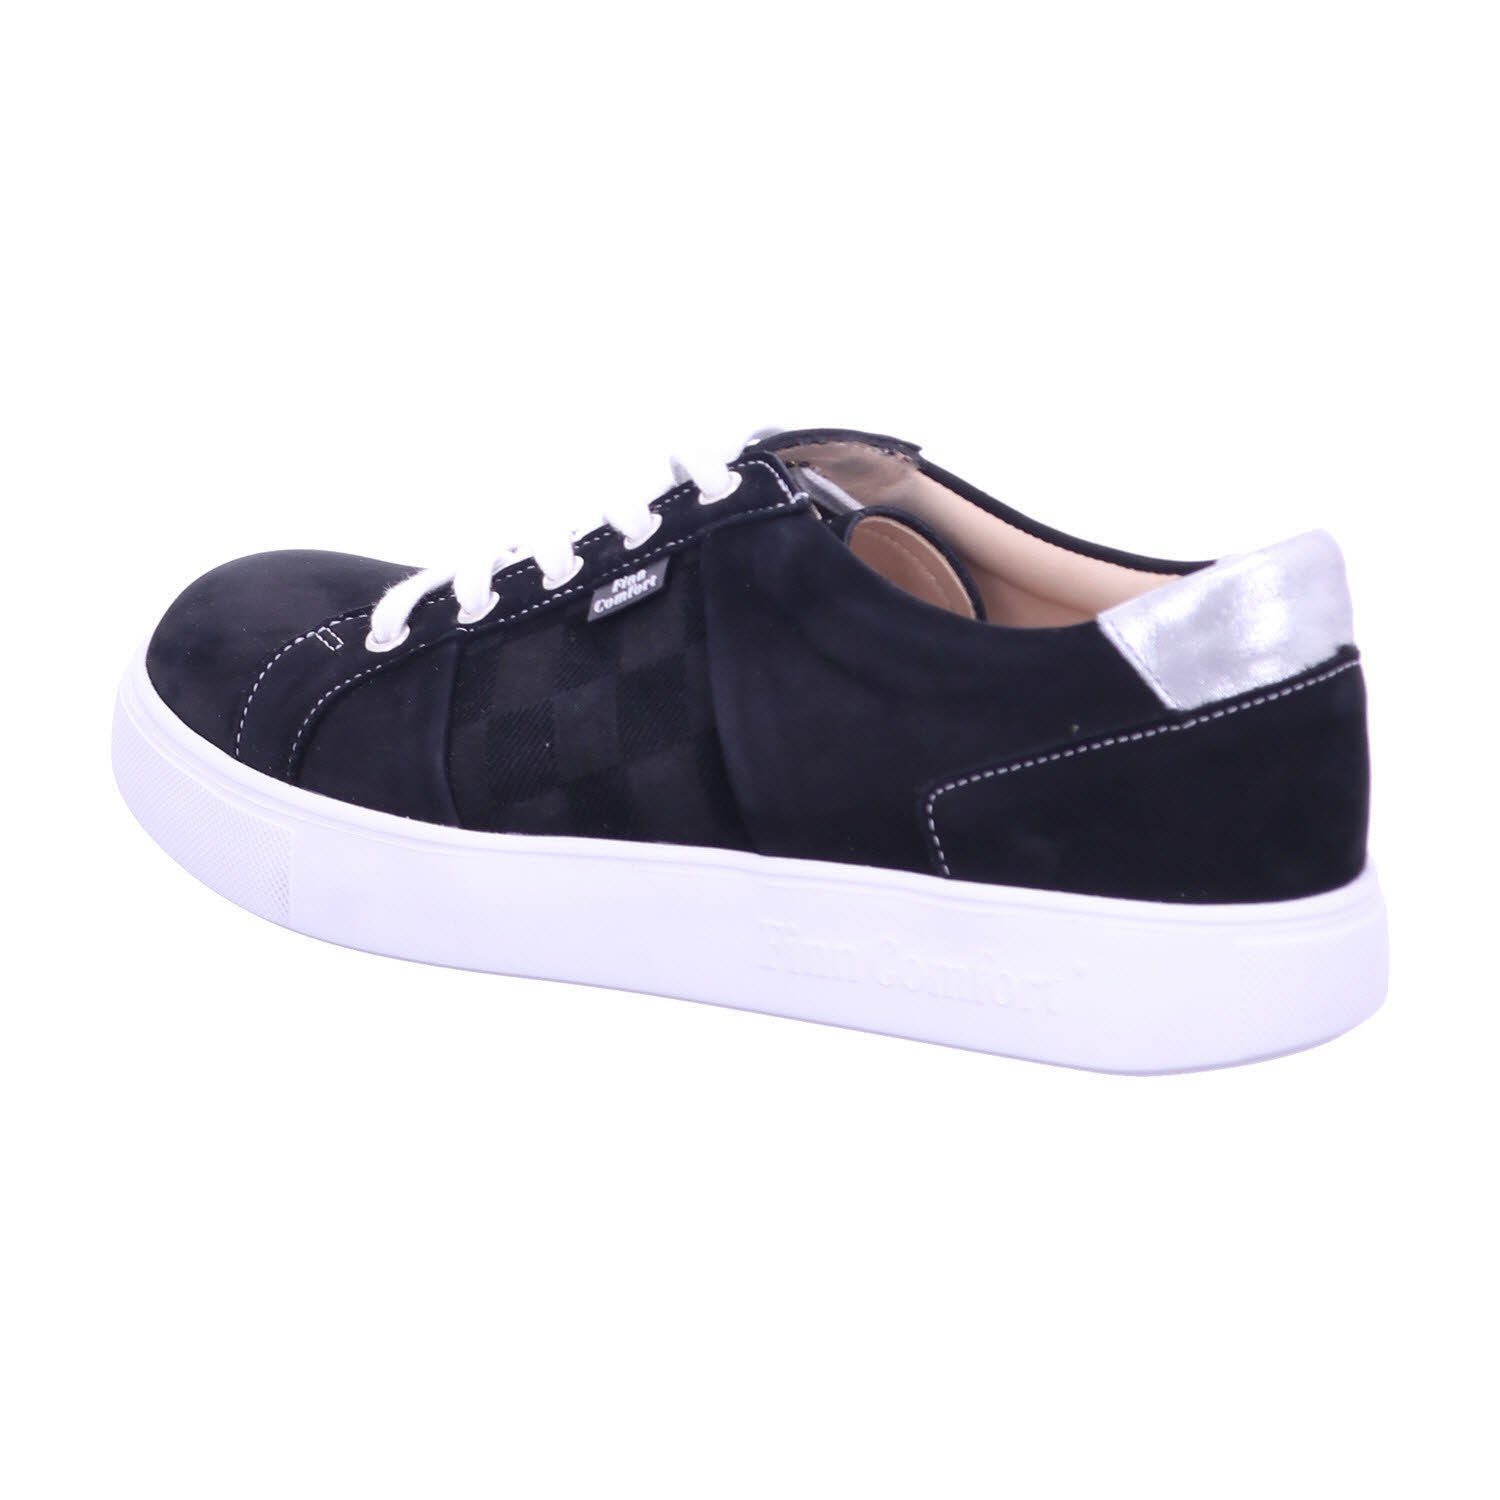 Finn black/nero/silber Sneaker Comfort